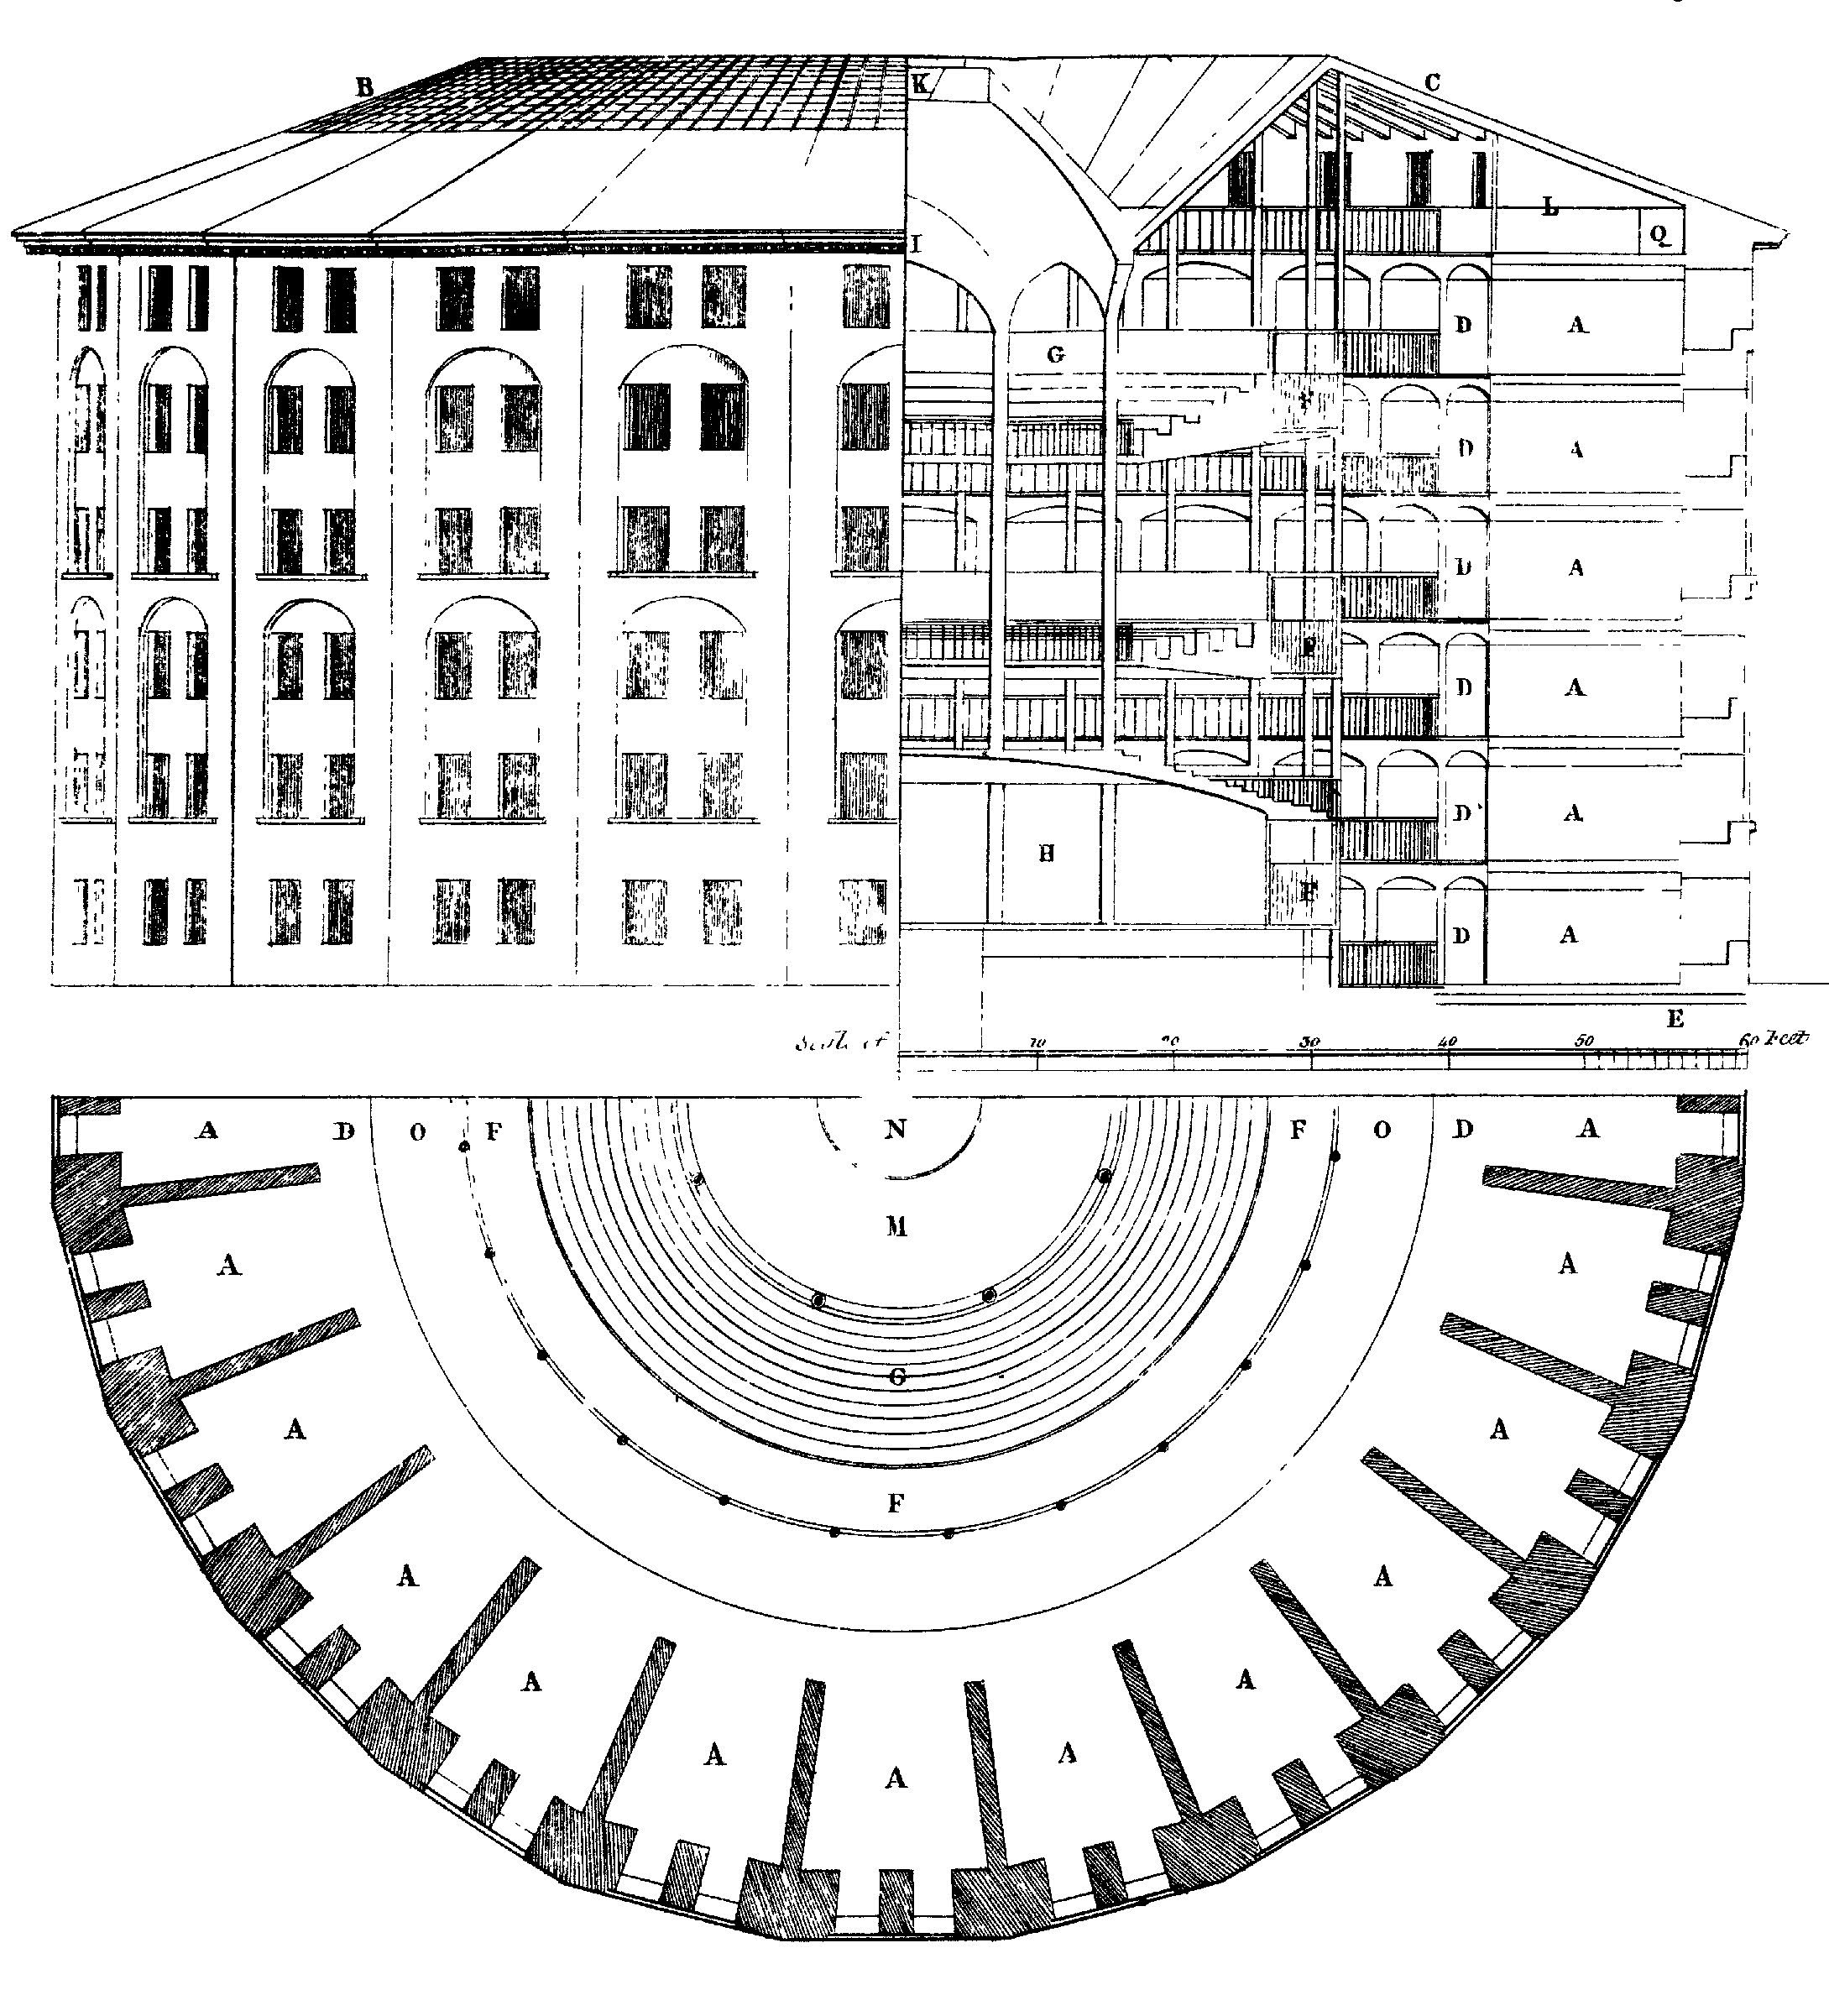 Kuva 6.3: Suunnittelu panoptikon vankilaan, jonka Jeremy Bentham ehdotti ensin. Keskellä on näkymättömiä näyttäjiä, jotka voivat seurata kaikkien käyttäytymistä, mutta niitä ei voida havaita. Piirustus Willey Reveley, 1791 (Lähde: Wikimedia Commons).